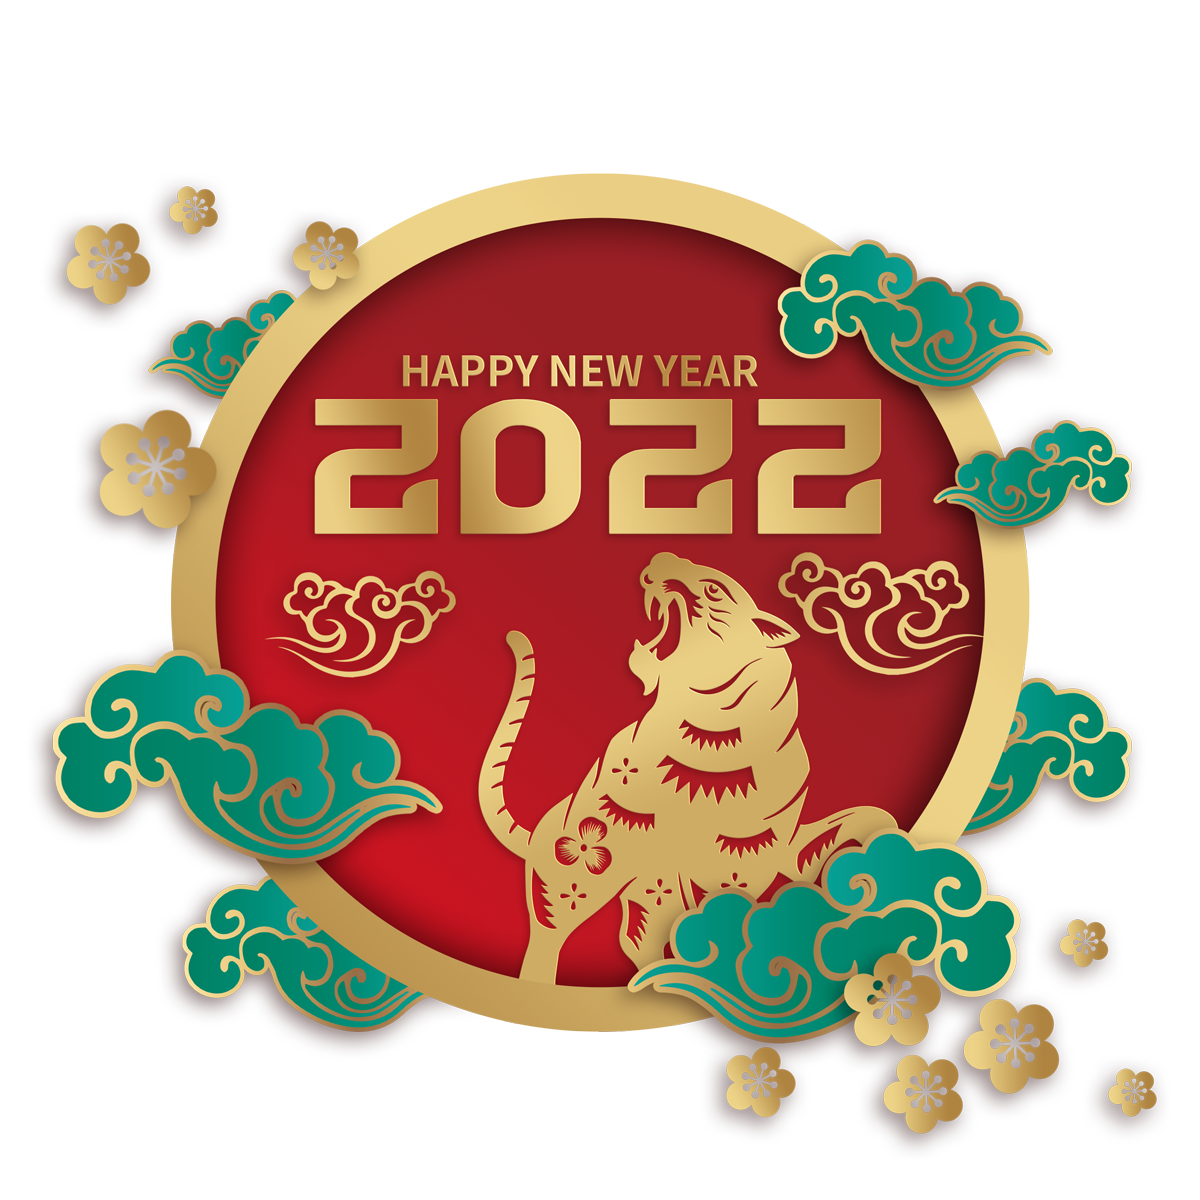 SINH HOẠT TẾT NGUYÊN ĐÁN - Thứ  bảy 5.2.2022 - Mùng Năm Tết